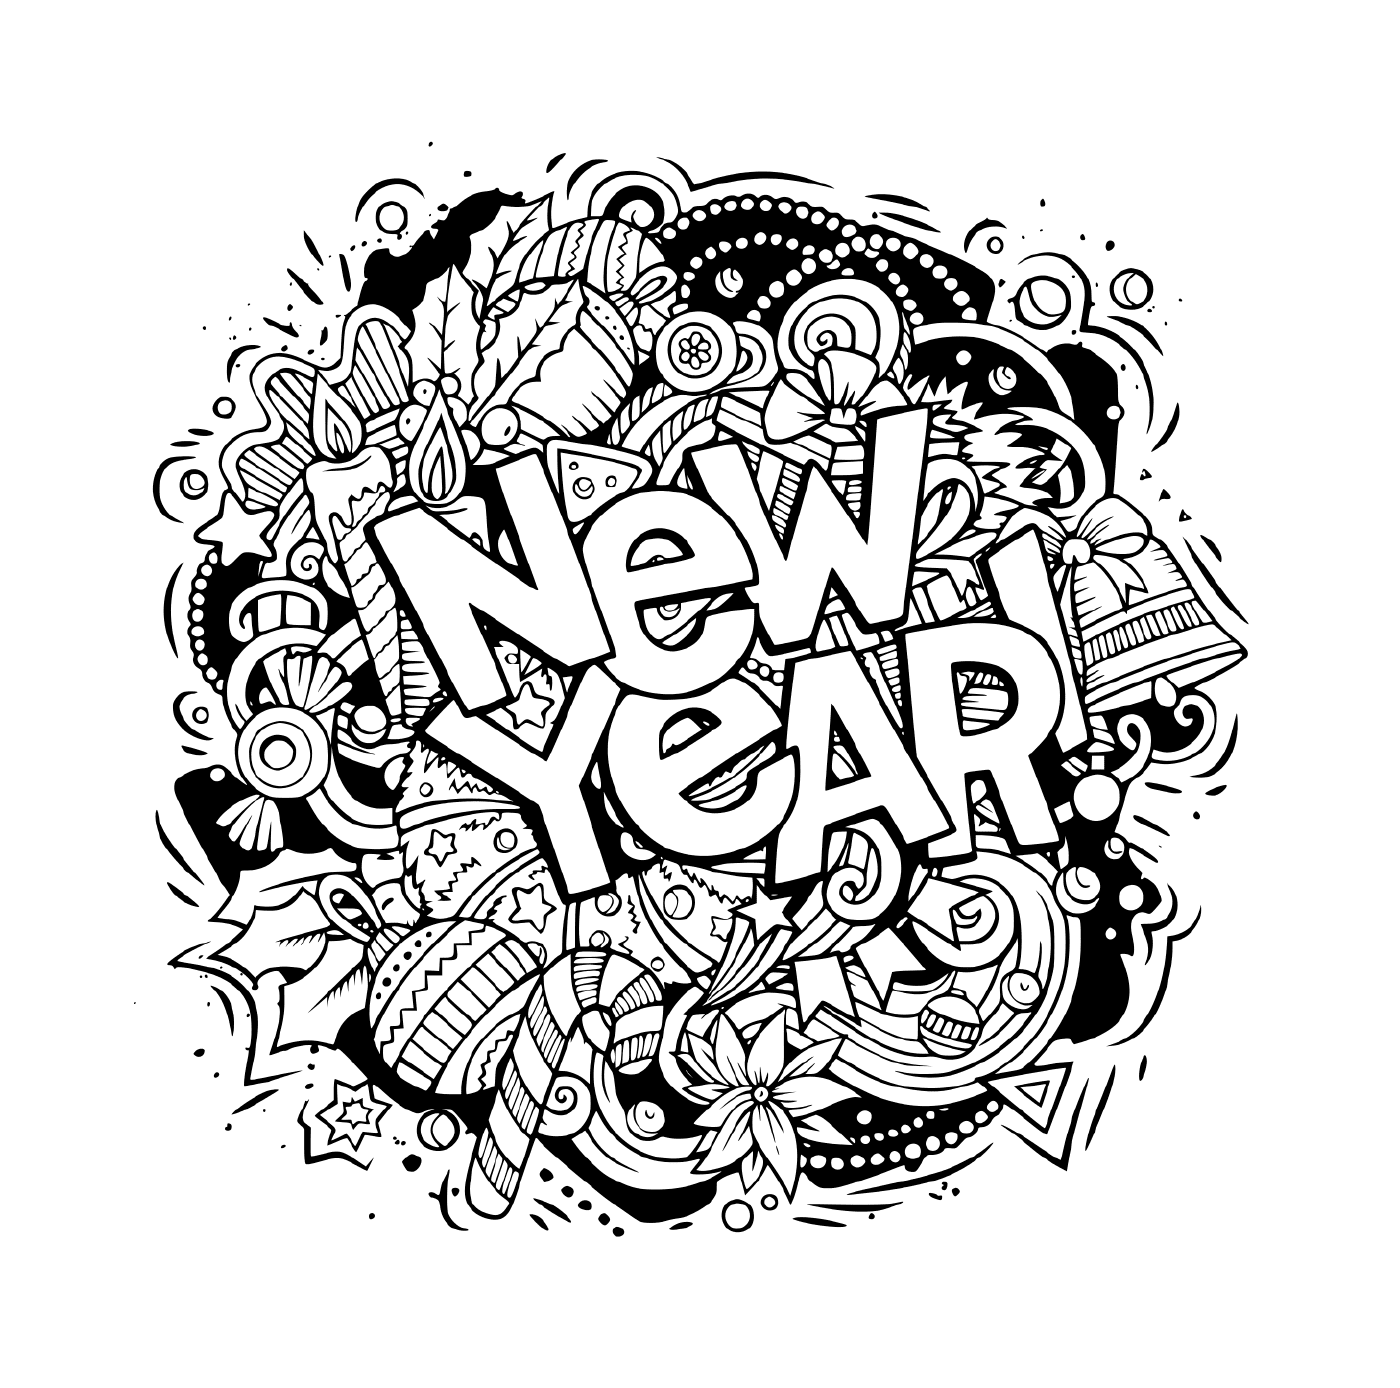  Doodles, Objekte und Elemente für das neue Jahr 